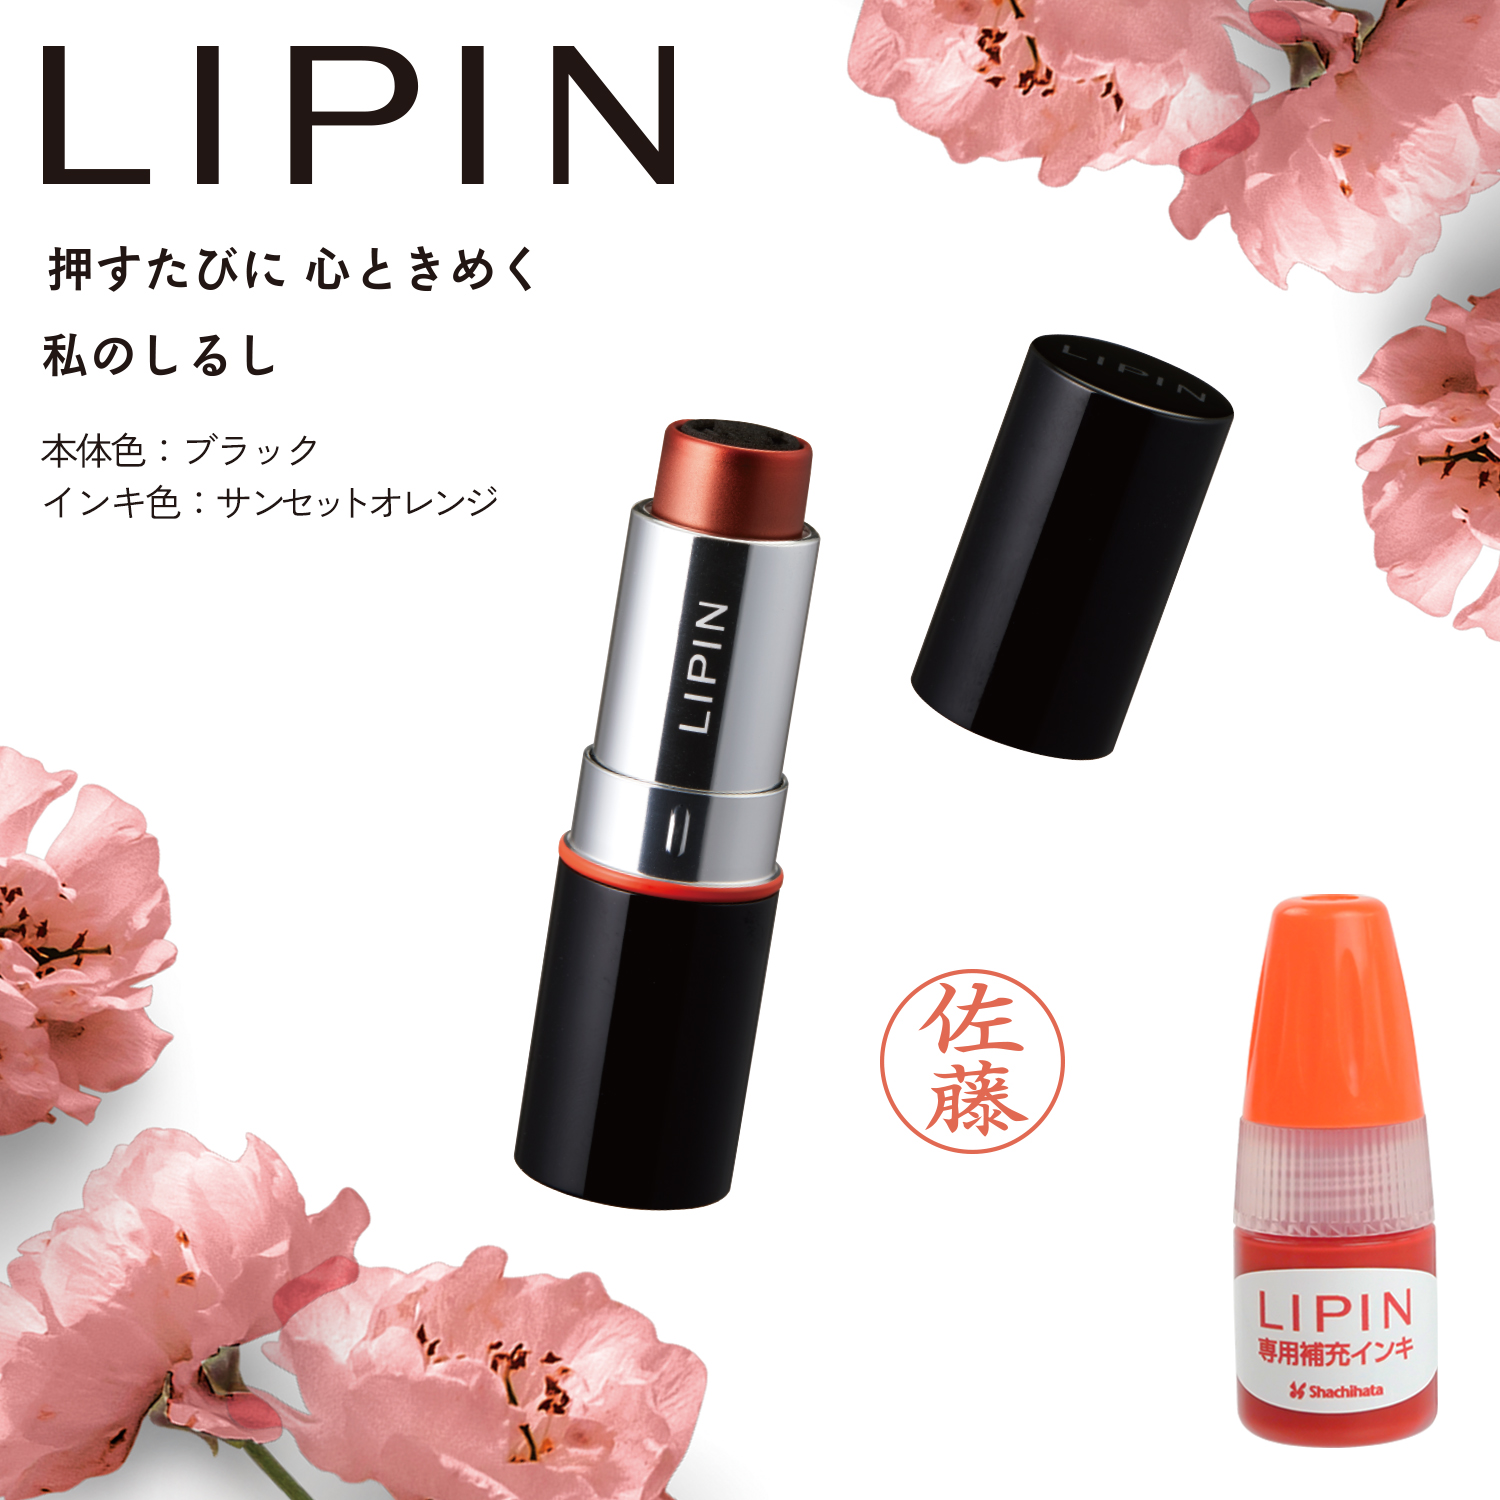 LIPIN+専用補充インキセット【本体色:ブラックサ/インキ色:サンセットオレンジ】_1